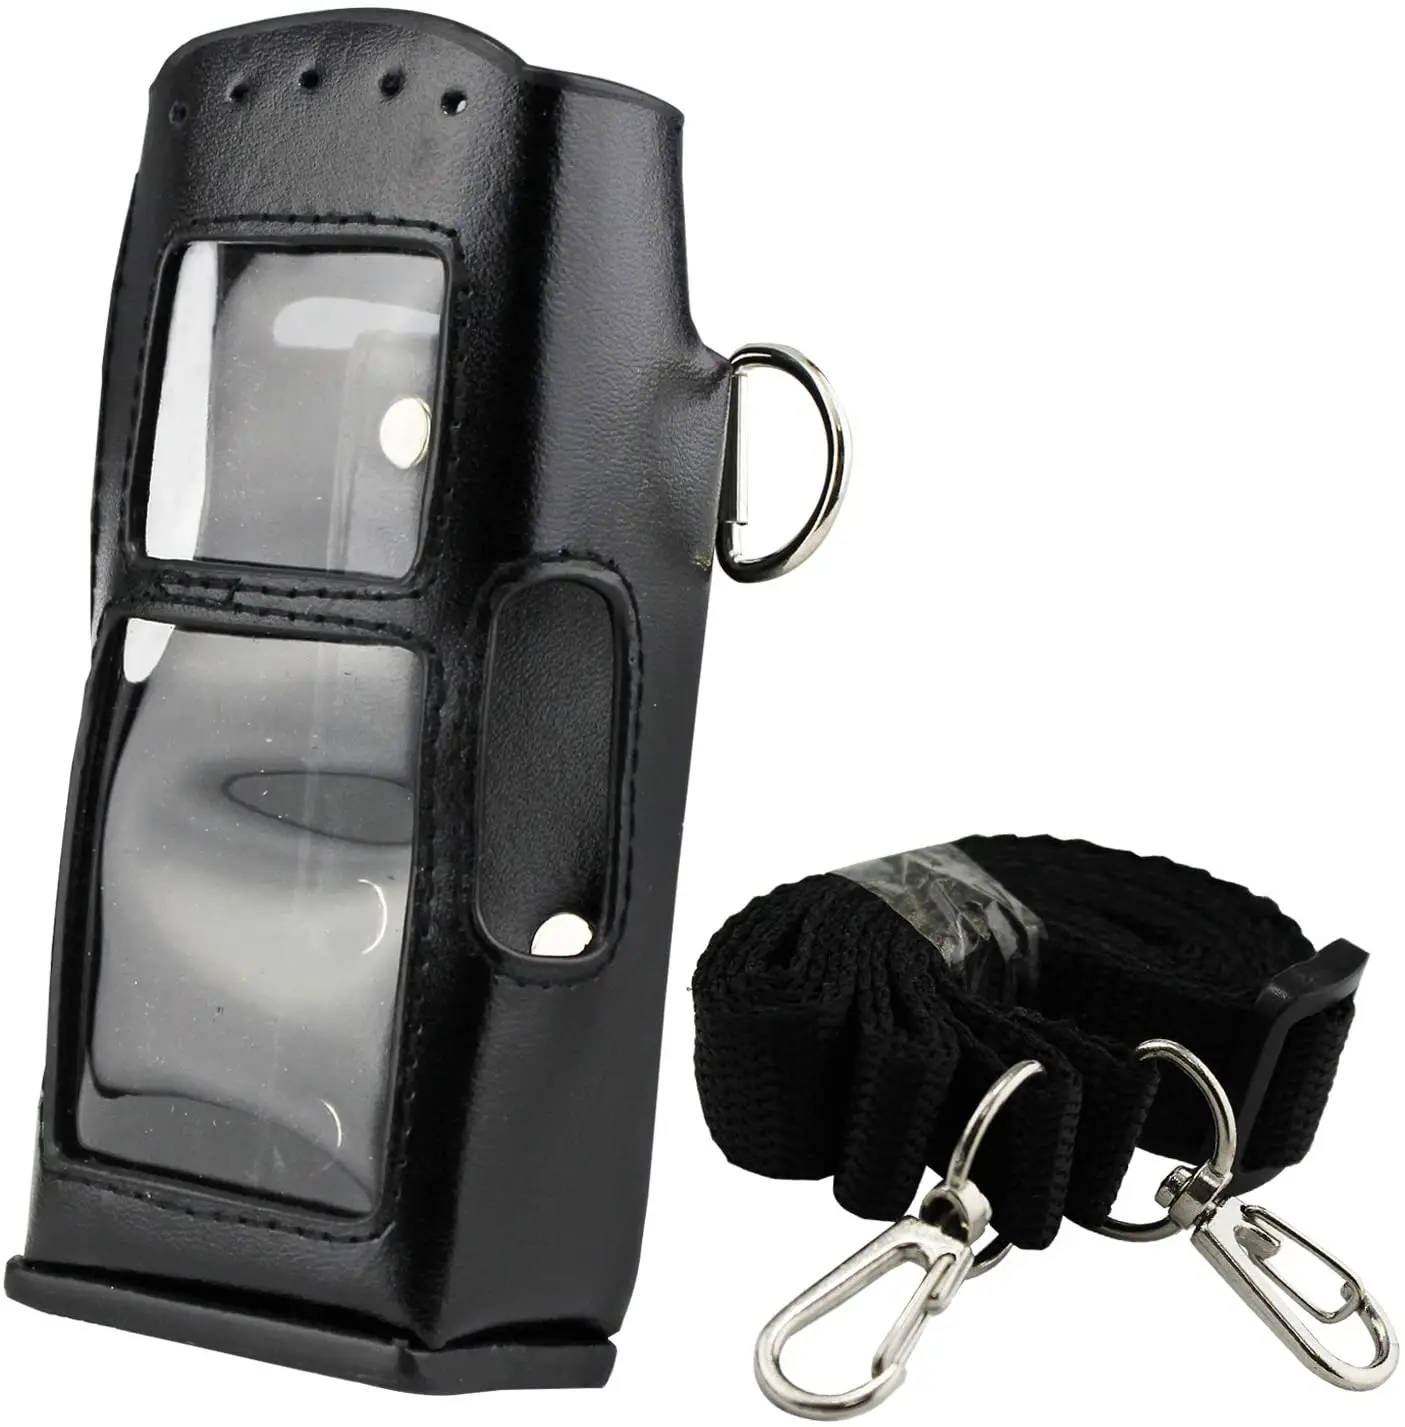 Hard Leather Case Cover Bag Holder for Motorola Walkie Talkie MTP850 Black 